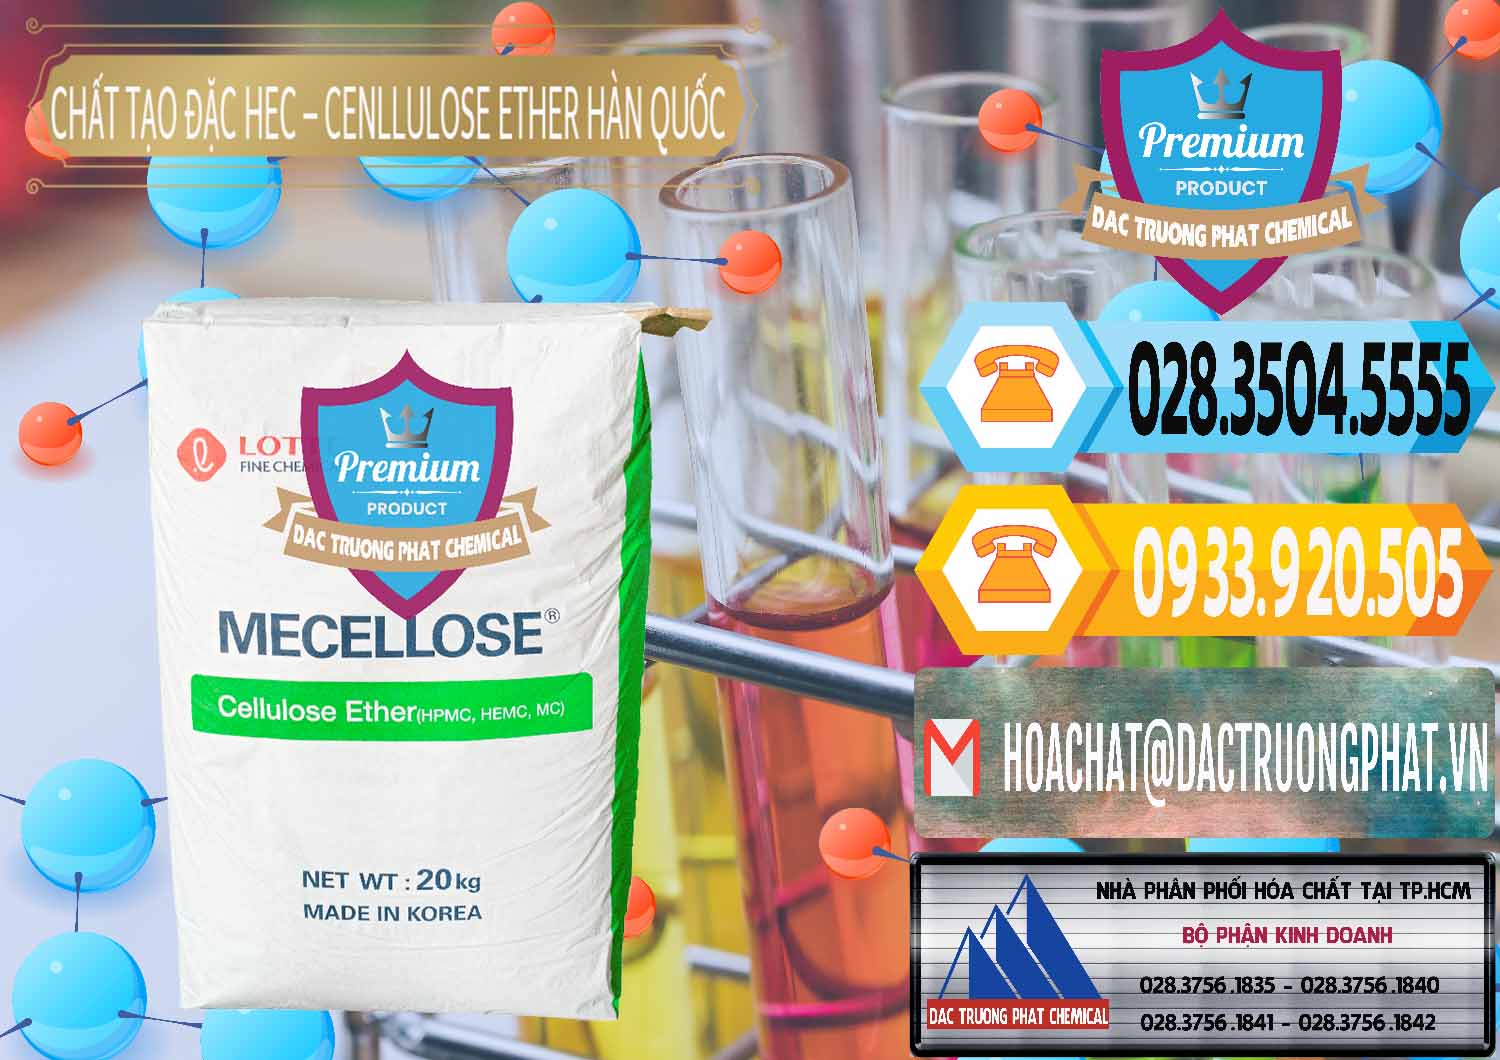 Công ty chuyên cung cấp - bán Chất Tạo Đặc Hec Mecellose – Cenllulose Ether Lotte Hàn Quốc Korea - 0050 - Cty chuyên cung cấp ( kinh doanh ) hóa chất tại TP.HCM - hoachattayrua.net